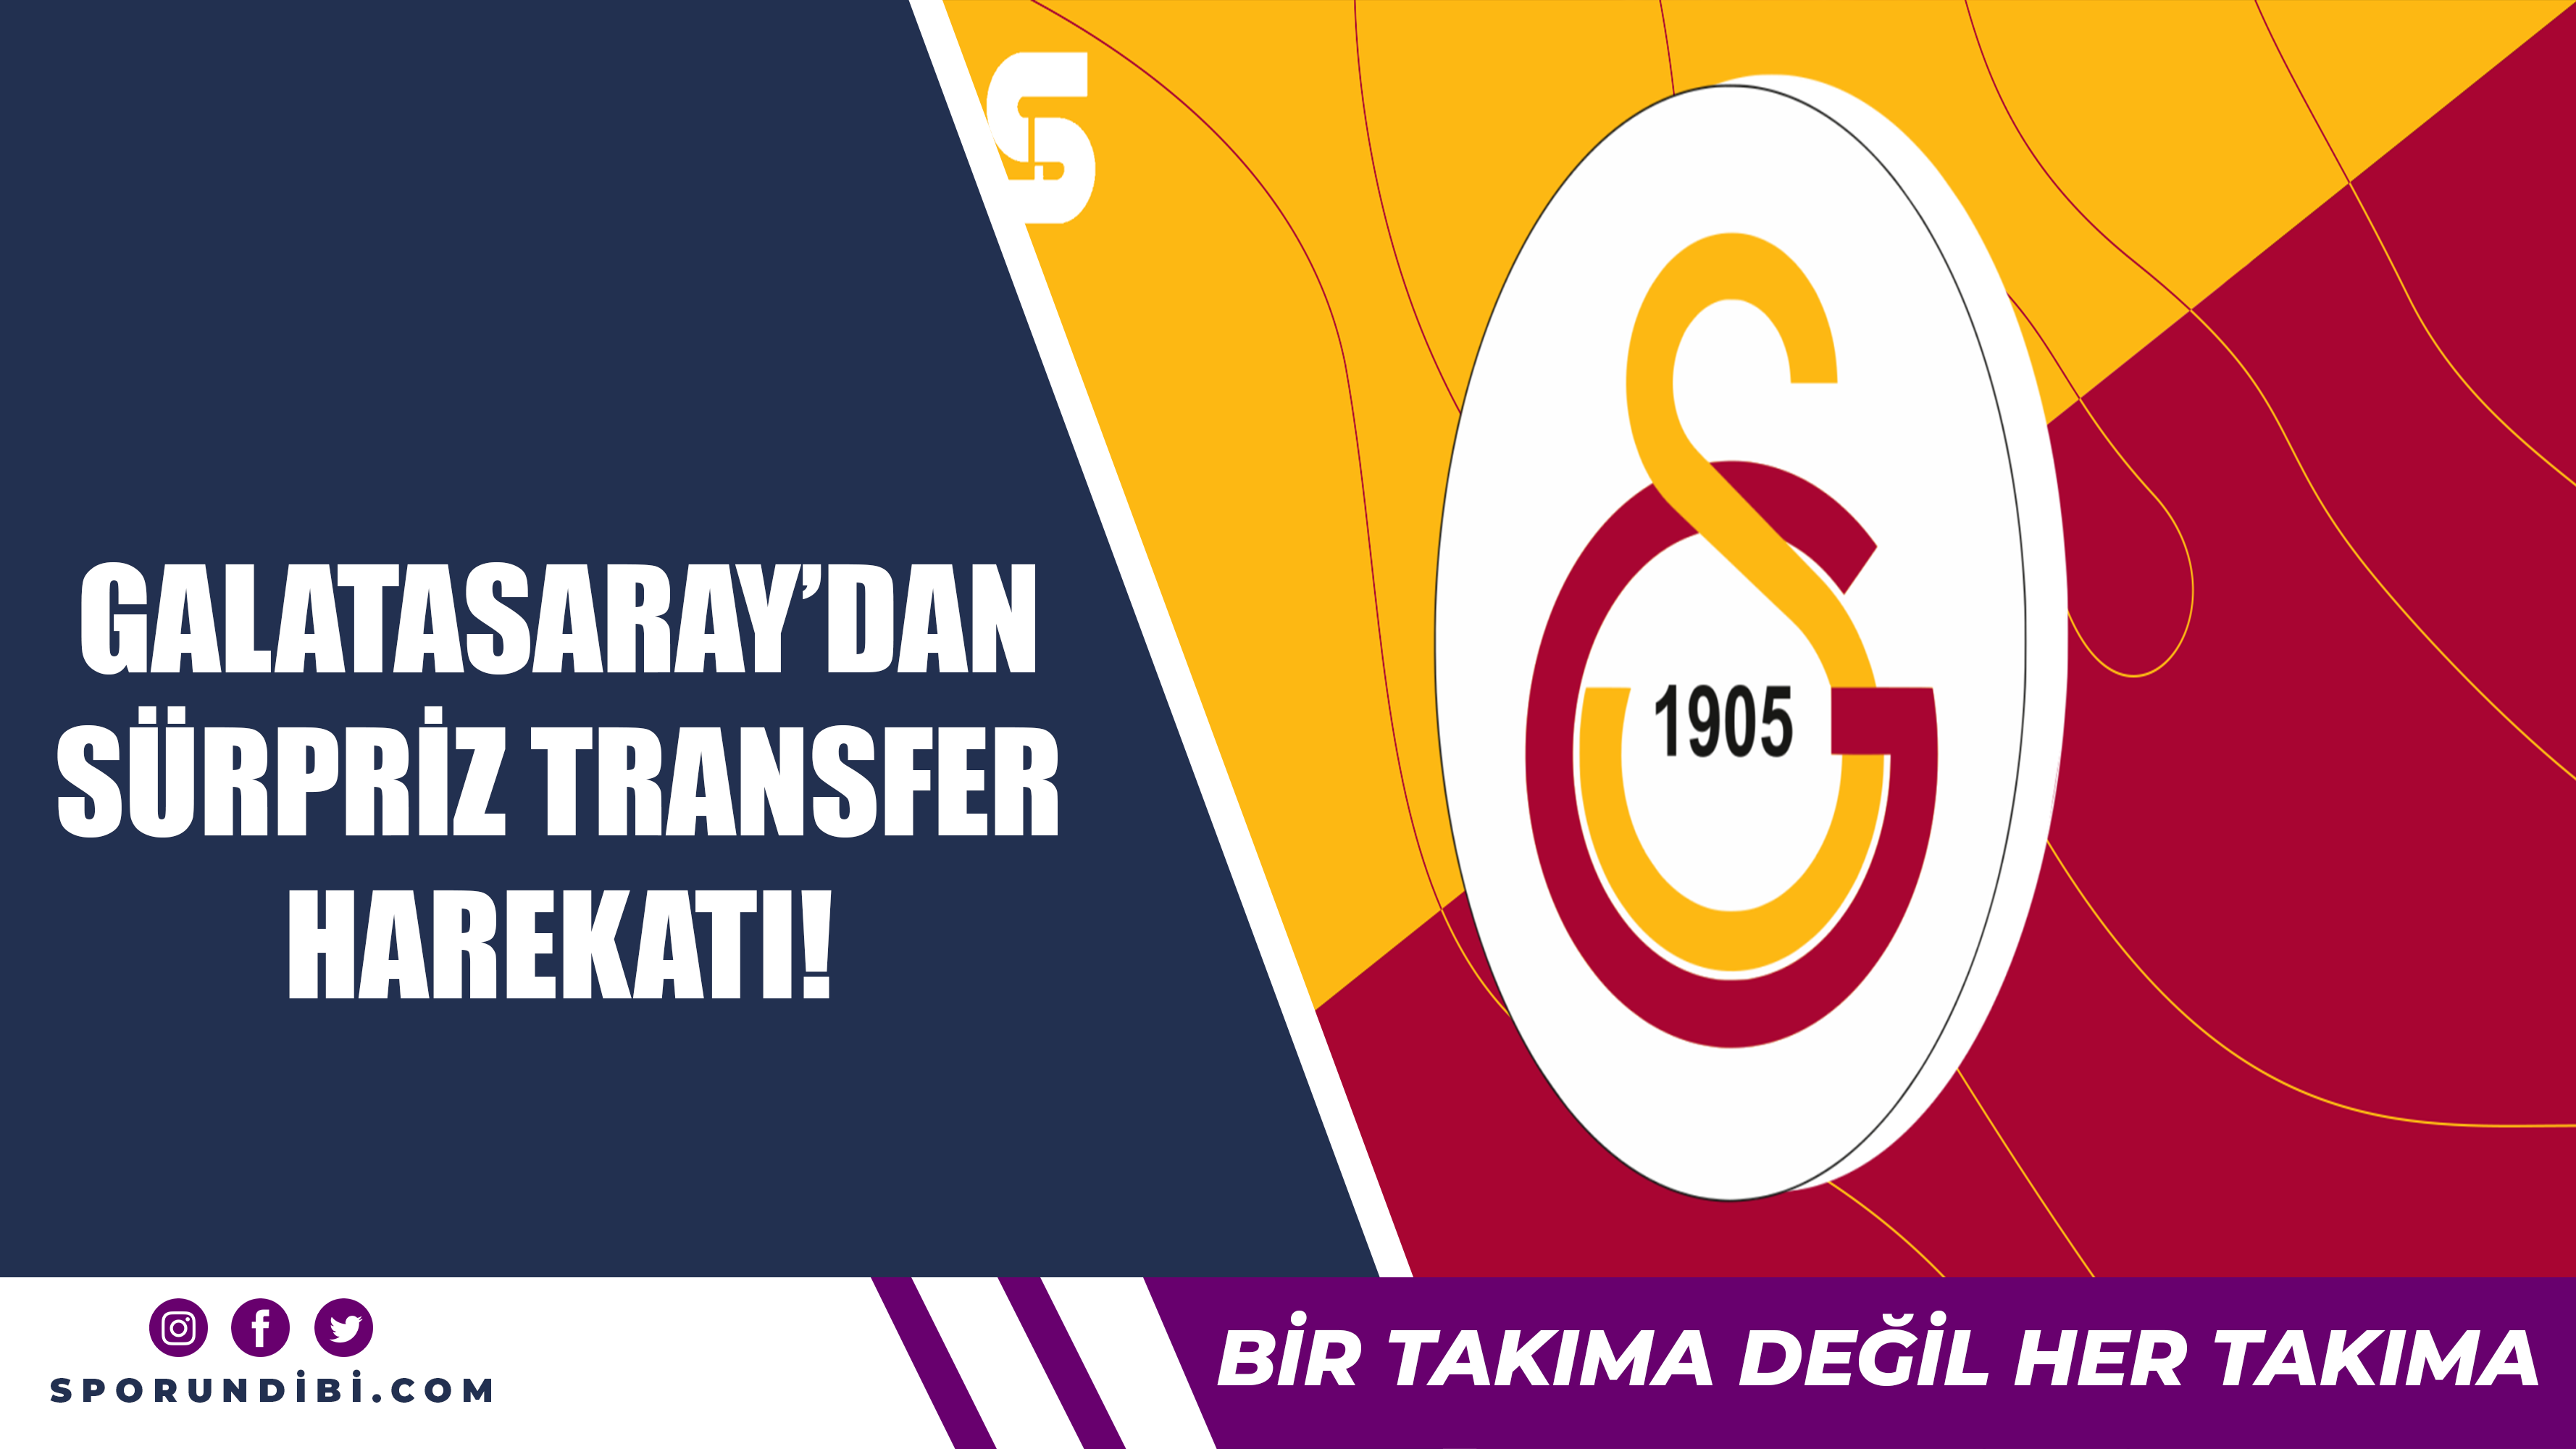 Galatasaray'dan sürpriz transfer harekatı!